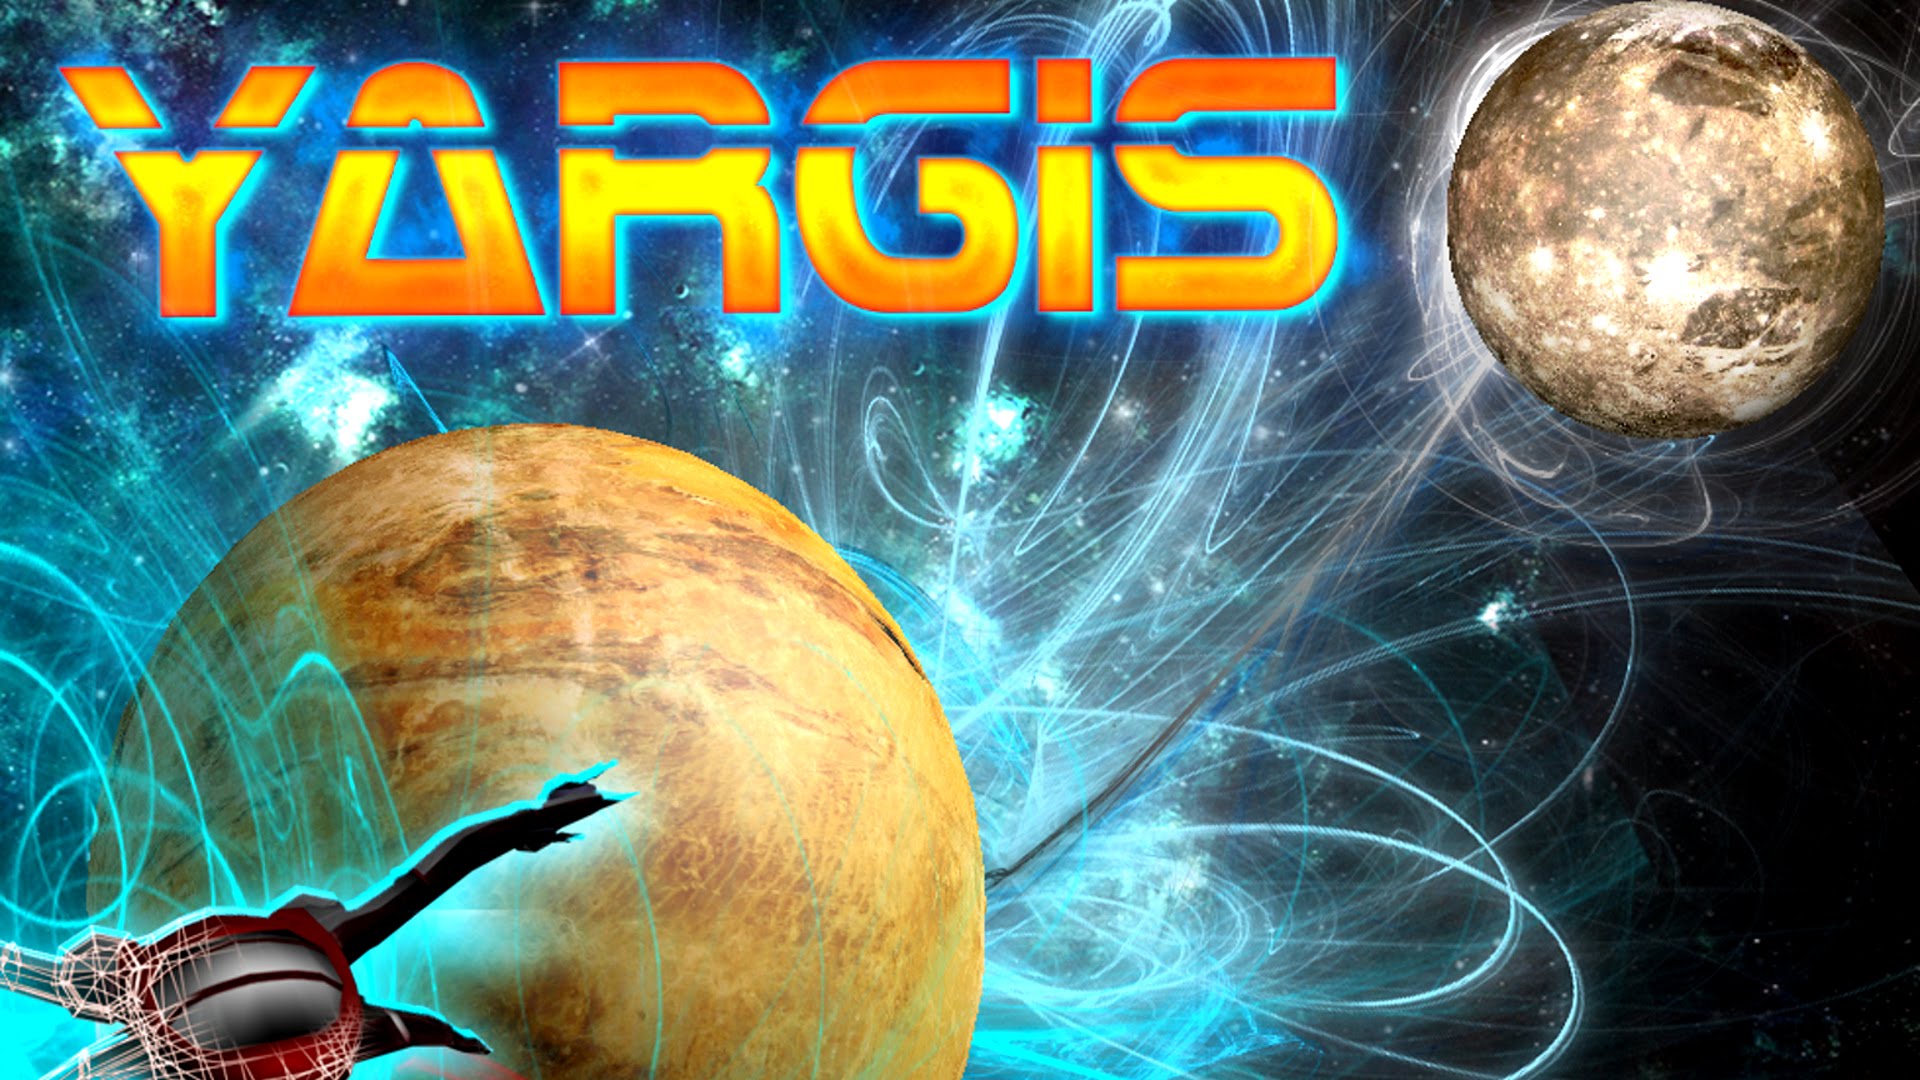 Yargis - Space Melee #27